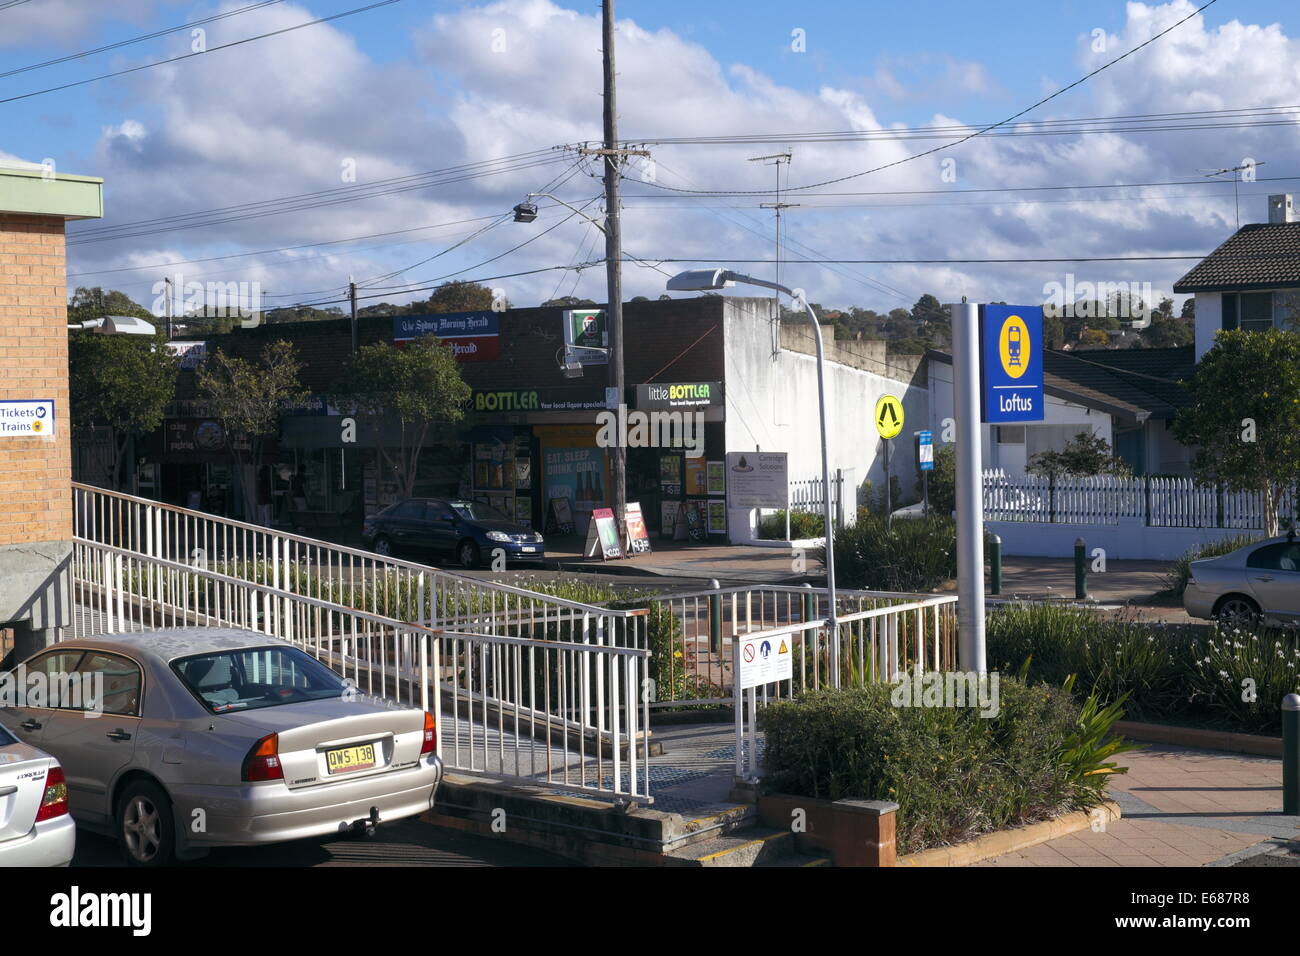 Loftus stazione ferroviaria nel sud di Sydney è su i sobborghi Orientali e illawarra linea, Nuovo Galles del Sud, Australia Foto Stock